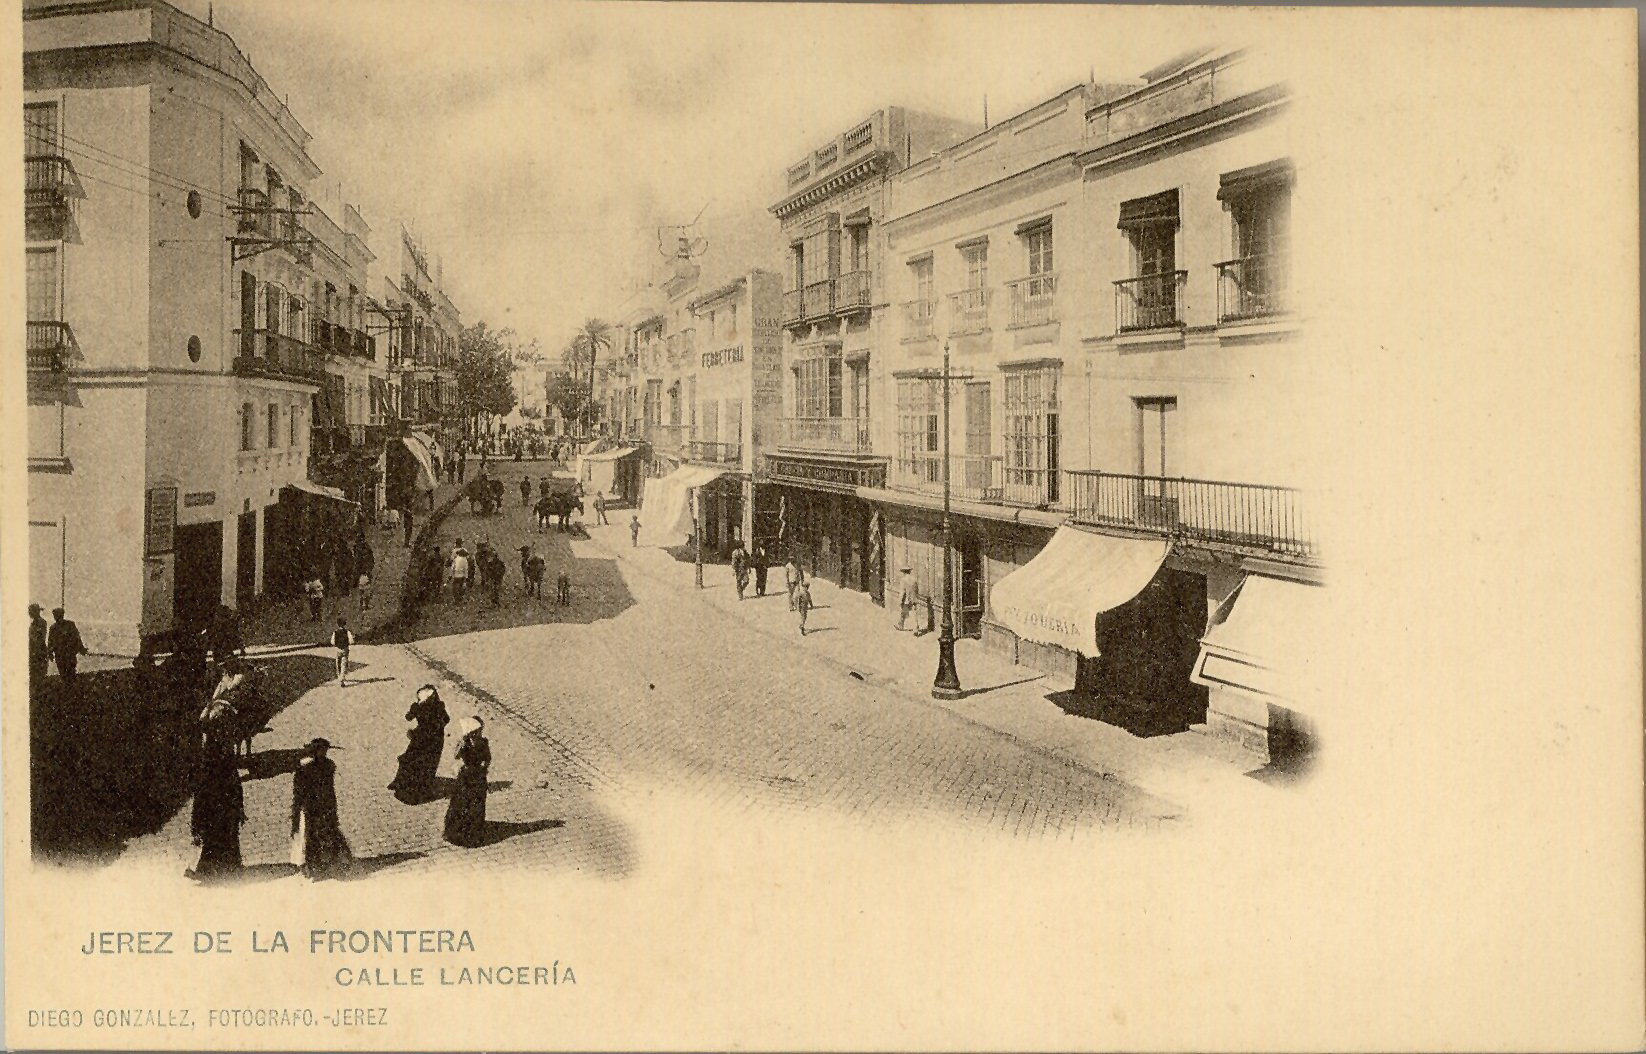 JEREZ DE LA FRONTERA: Calle Lancería.1901 (DJ07651)